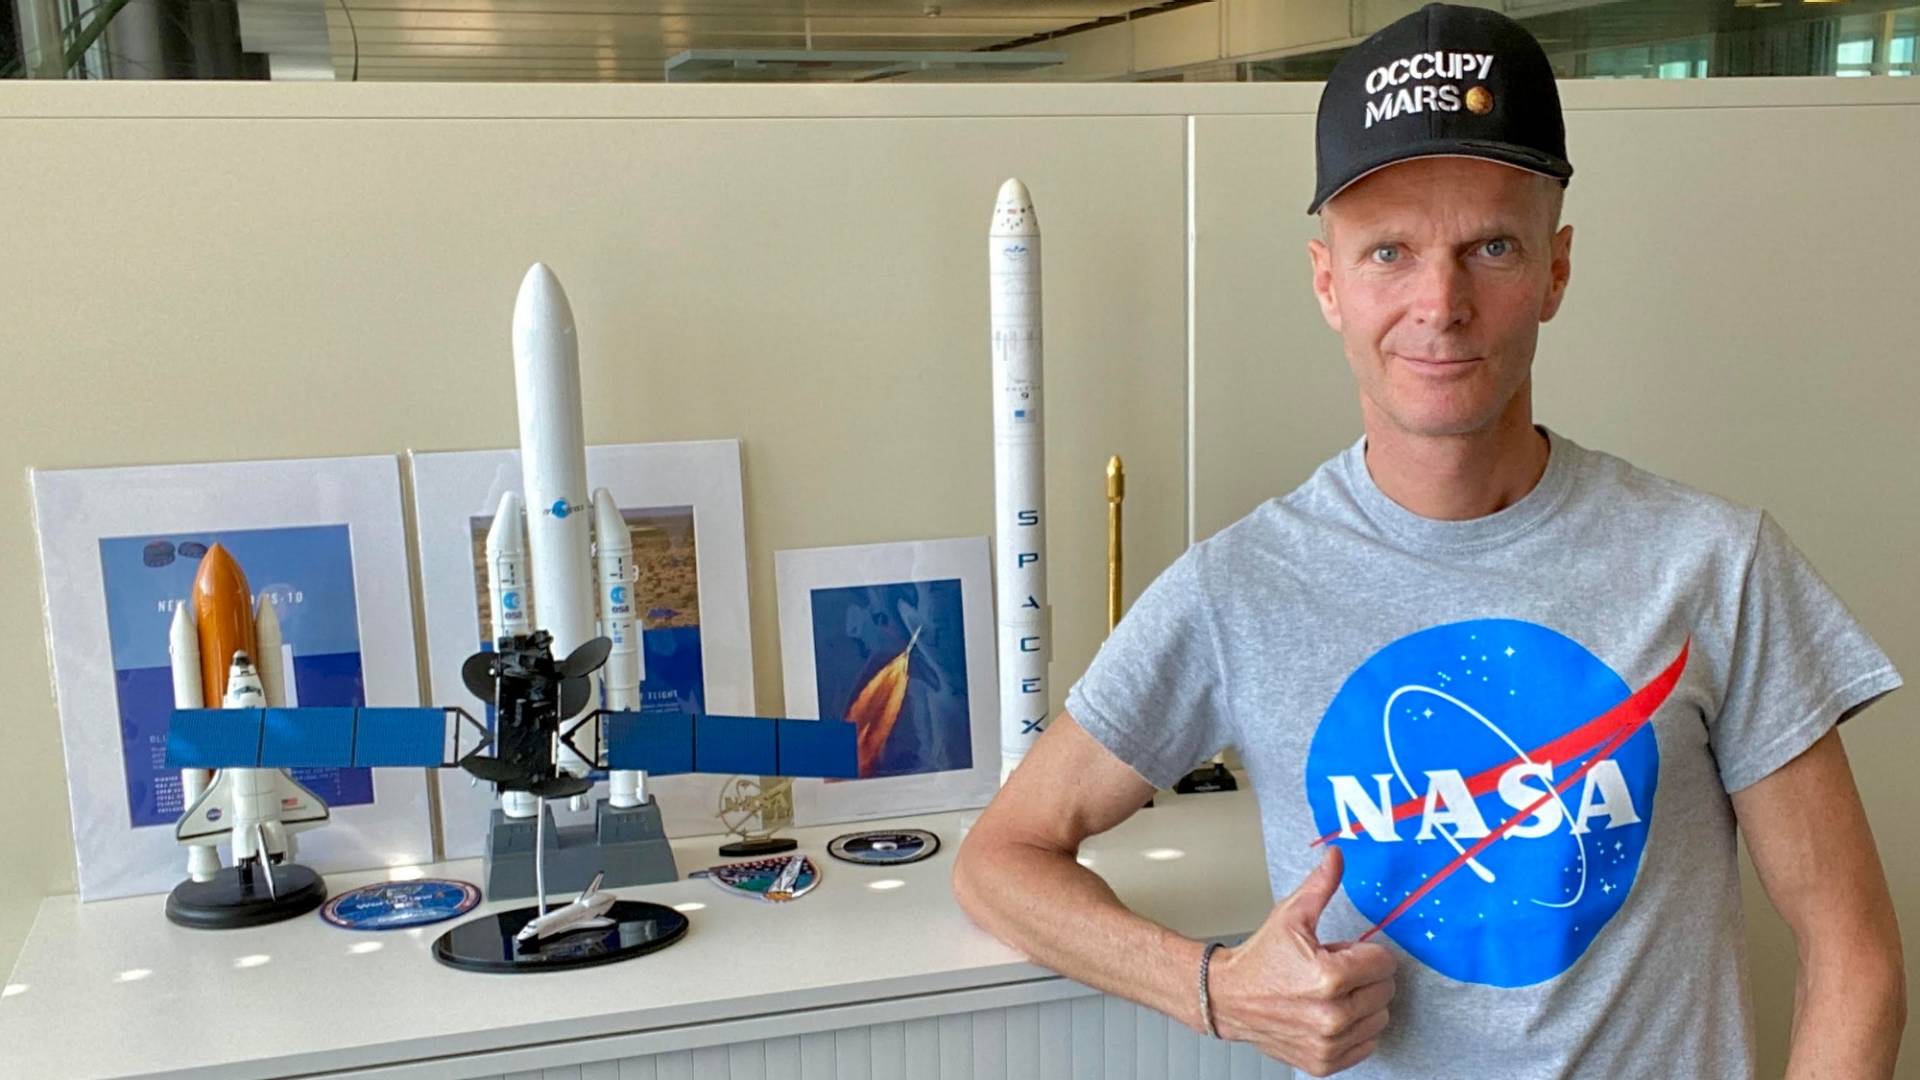 Mann im NASA T-Shirt neben einem Büroschrank